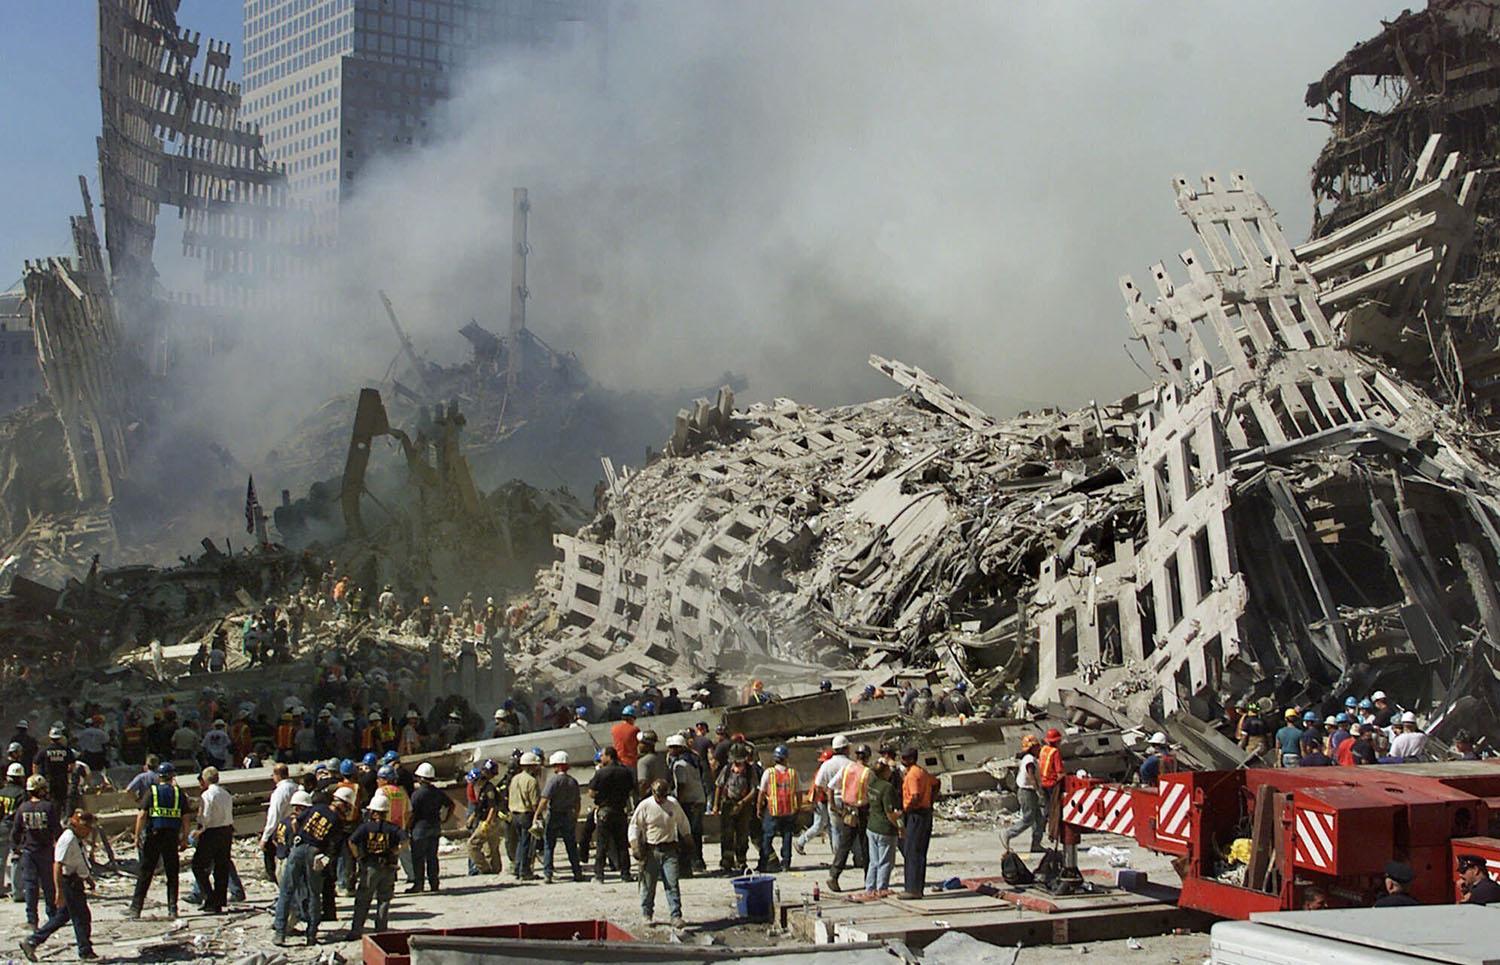 ARCHIVO - En esta fotografía de archivo del jueves 13 de septiembre de 2001, los rescatistas continúan su búsqueda mientras el humo se eleva de los escombros del World Trade Center en Nueva York. (Foto AP / Beth A. Keizer, archivo)